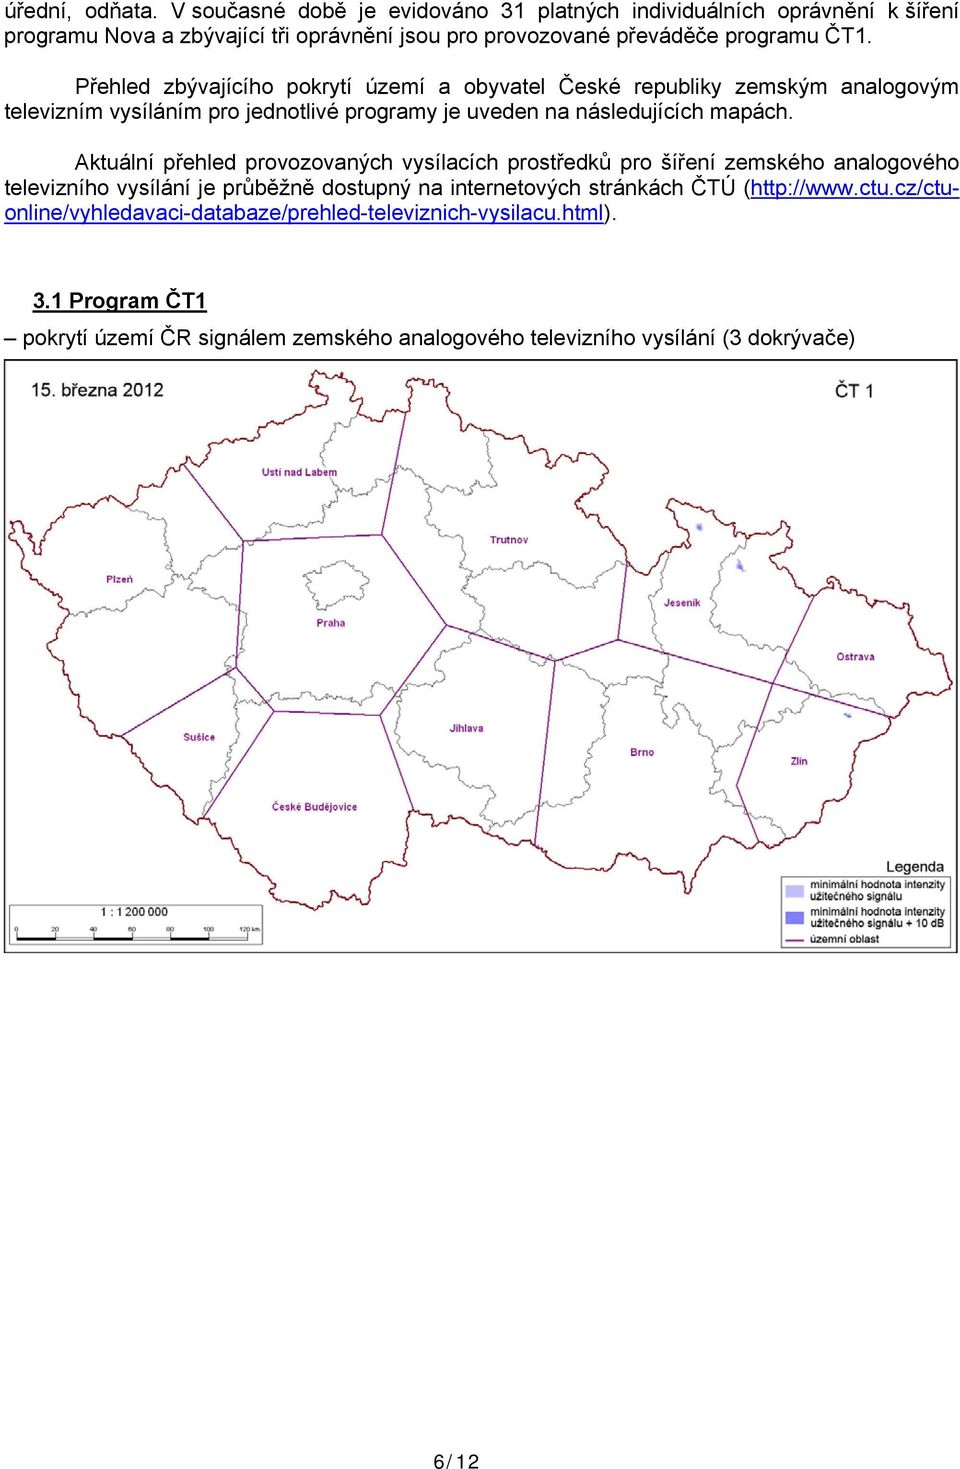 Přehled zbývajícího pokrytí území a obyvatel České republiky zemským analogovým televizním vysíláním pro jednotlivé programy je uveden na následujících mapách.